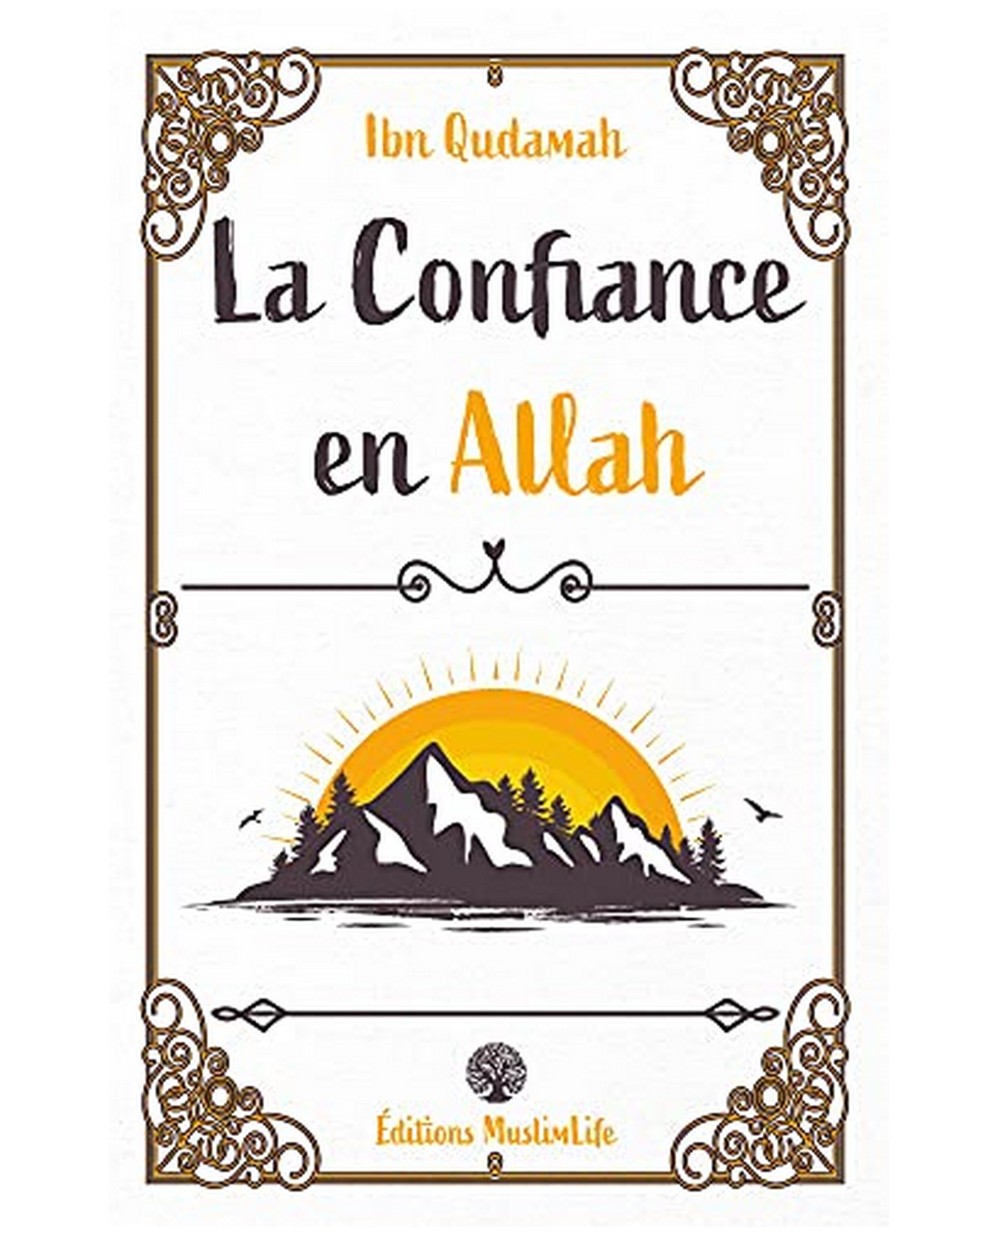 La confiance en Allah - IBN QUDAMAH - Edition Muslimlife